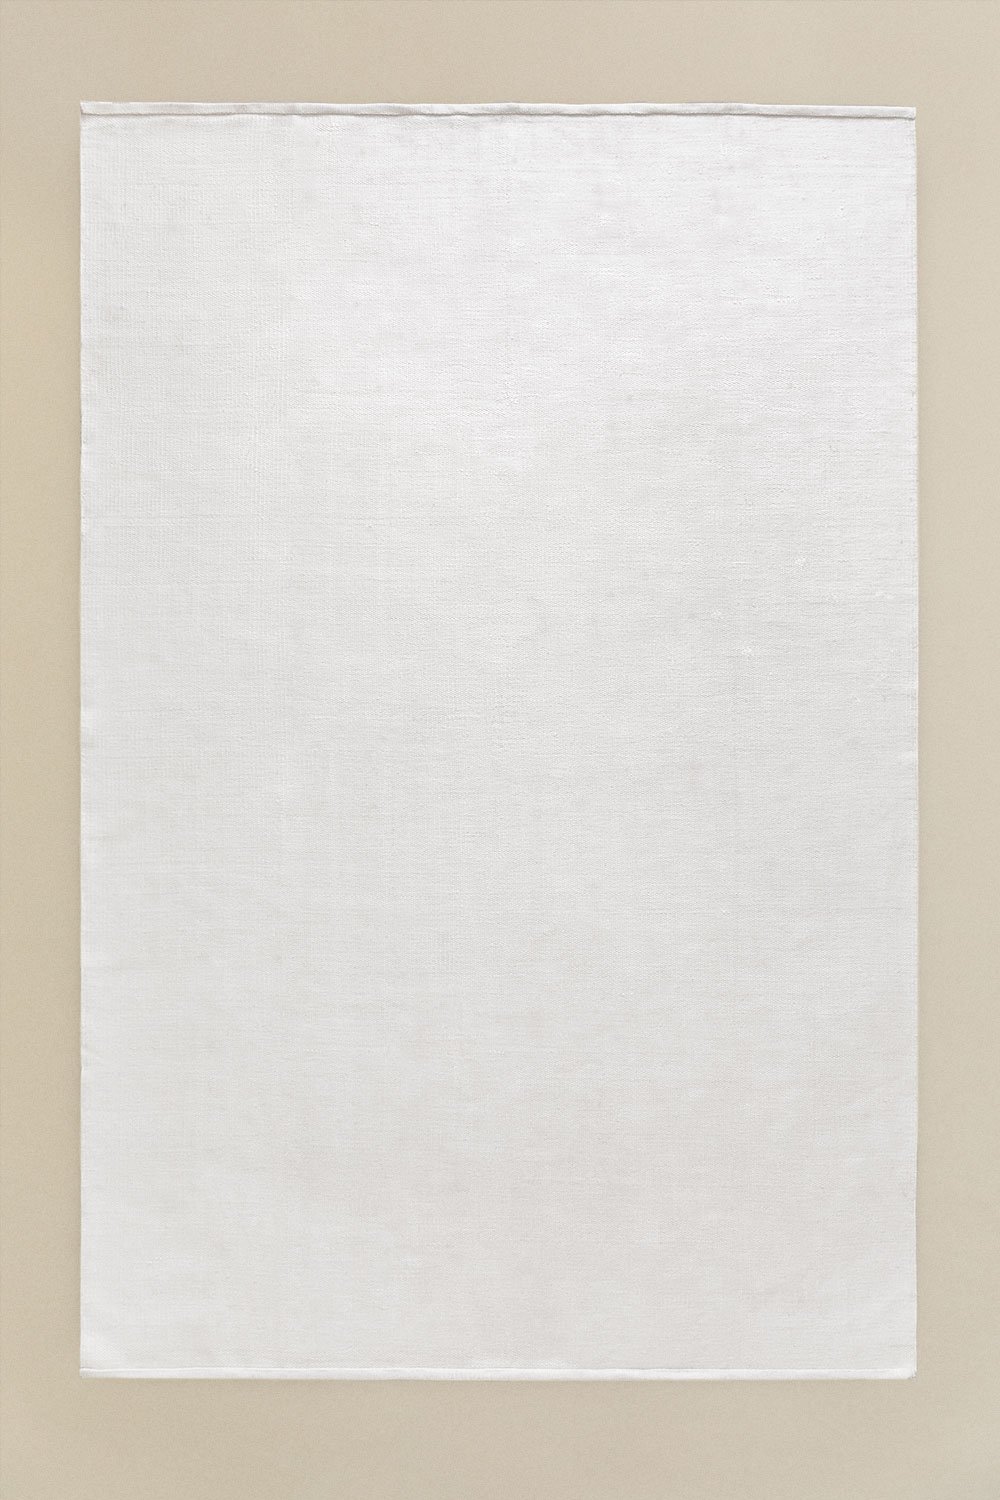 Vloerkleed (230x160 cm) Ginsberg, galerij beeld 1